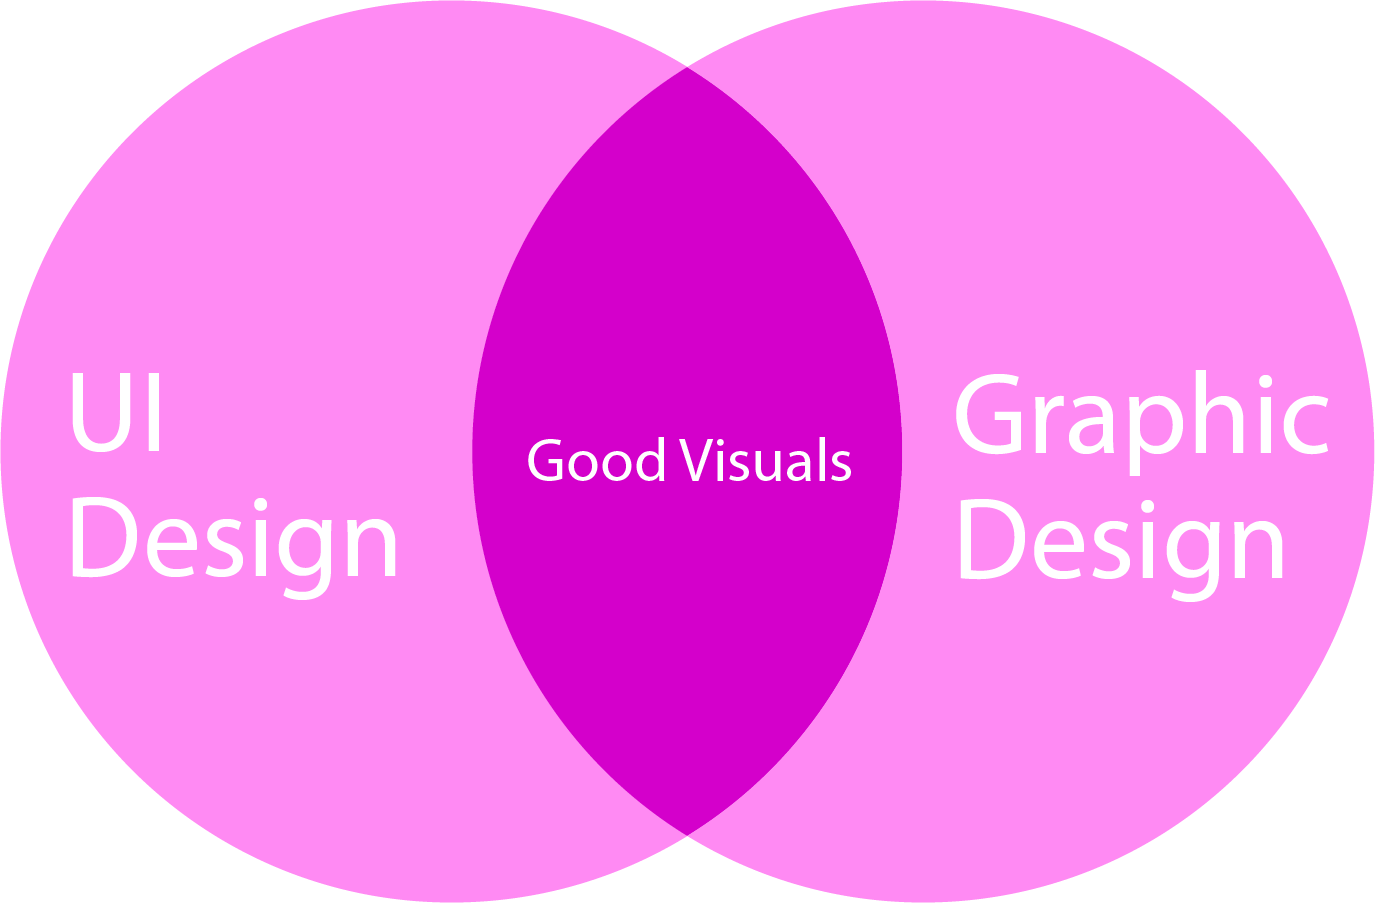 ui design and graphic design compare